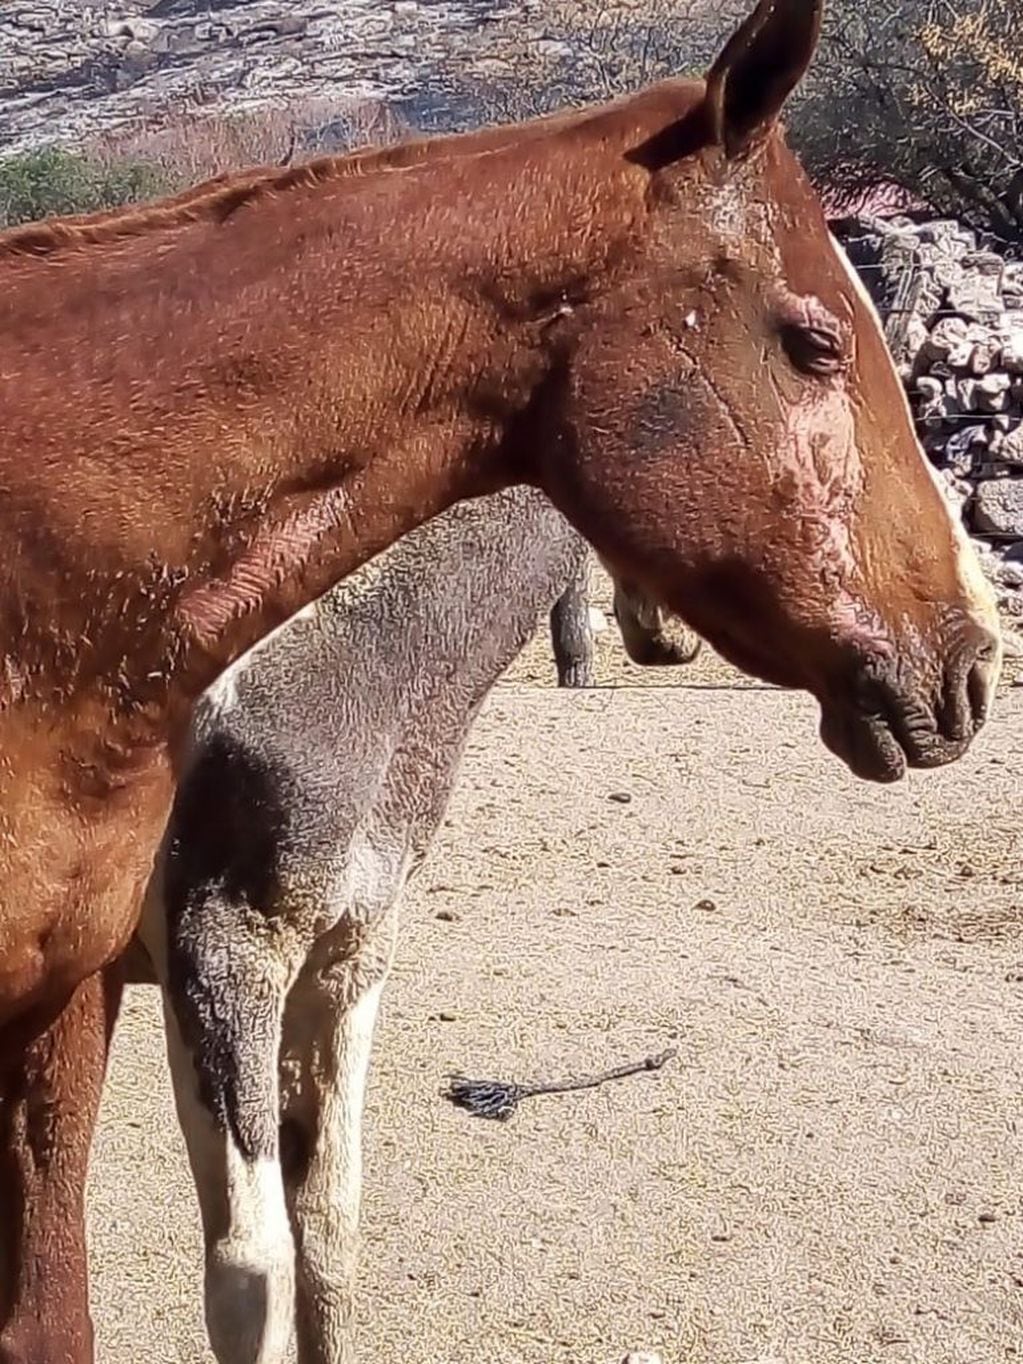 Uno de los caballos afectados tras el incendio en Tanti. (Foto: gentileza Azul Godoy).